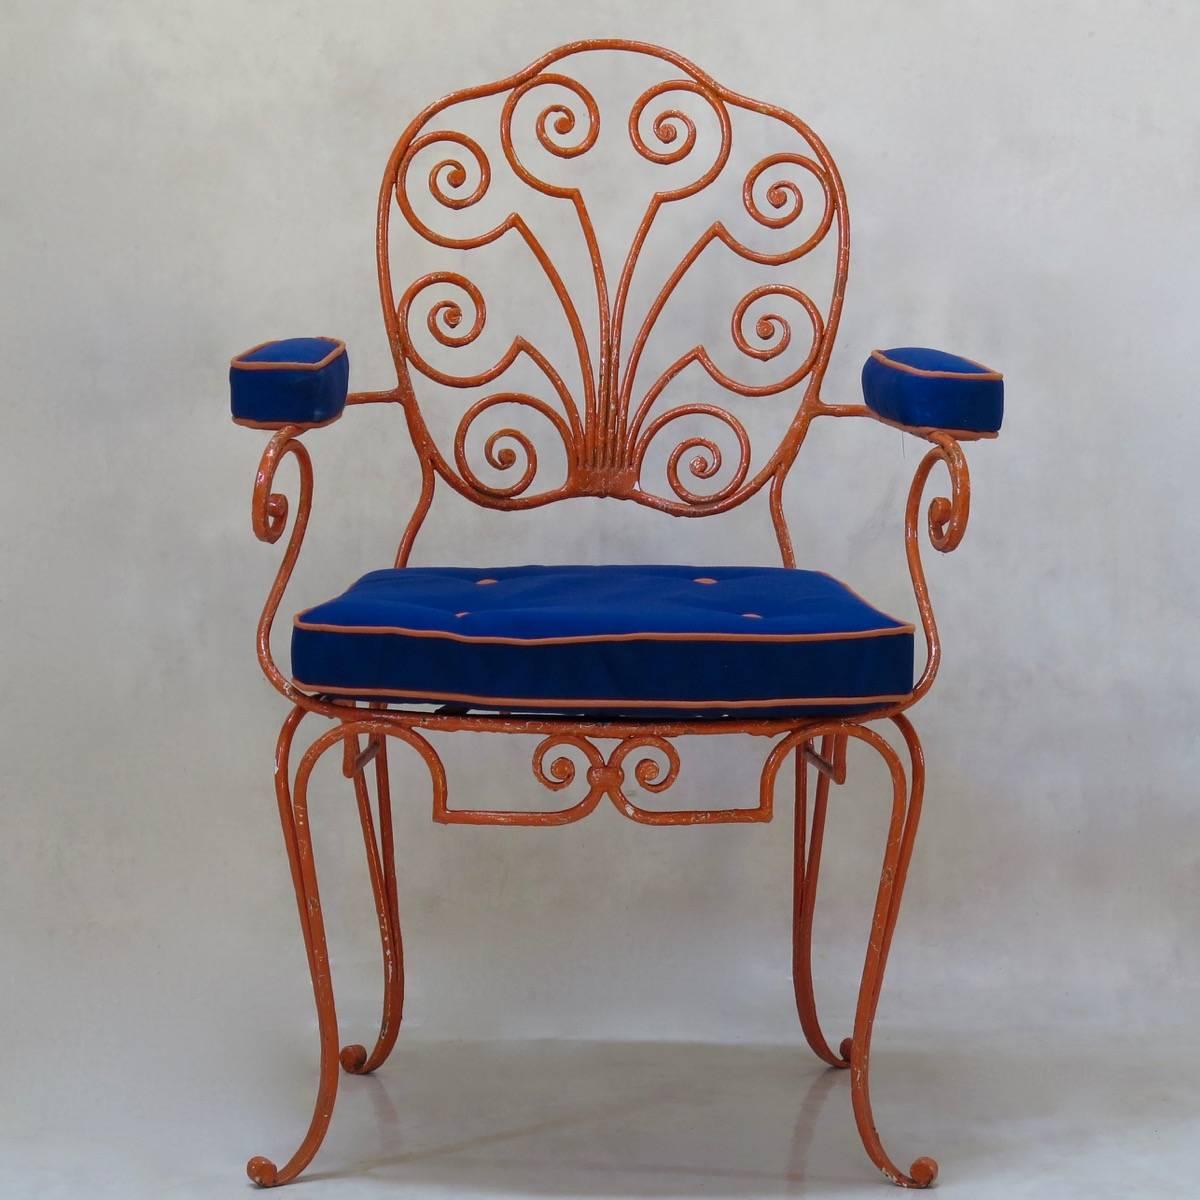 Cet ensemble de huit fauteuils en fer forgé est d'une qualité et d'un design magnifiques, présentant une interprétation des années 1940 du style Louis XV. Les dos des boucliers sont légèrement incurvés et présentent un joli motif en forme de volute.